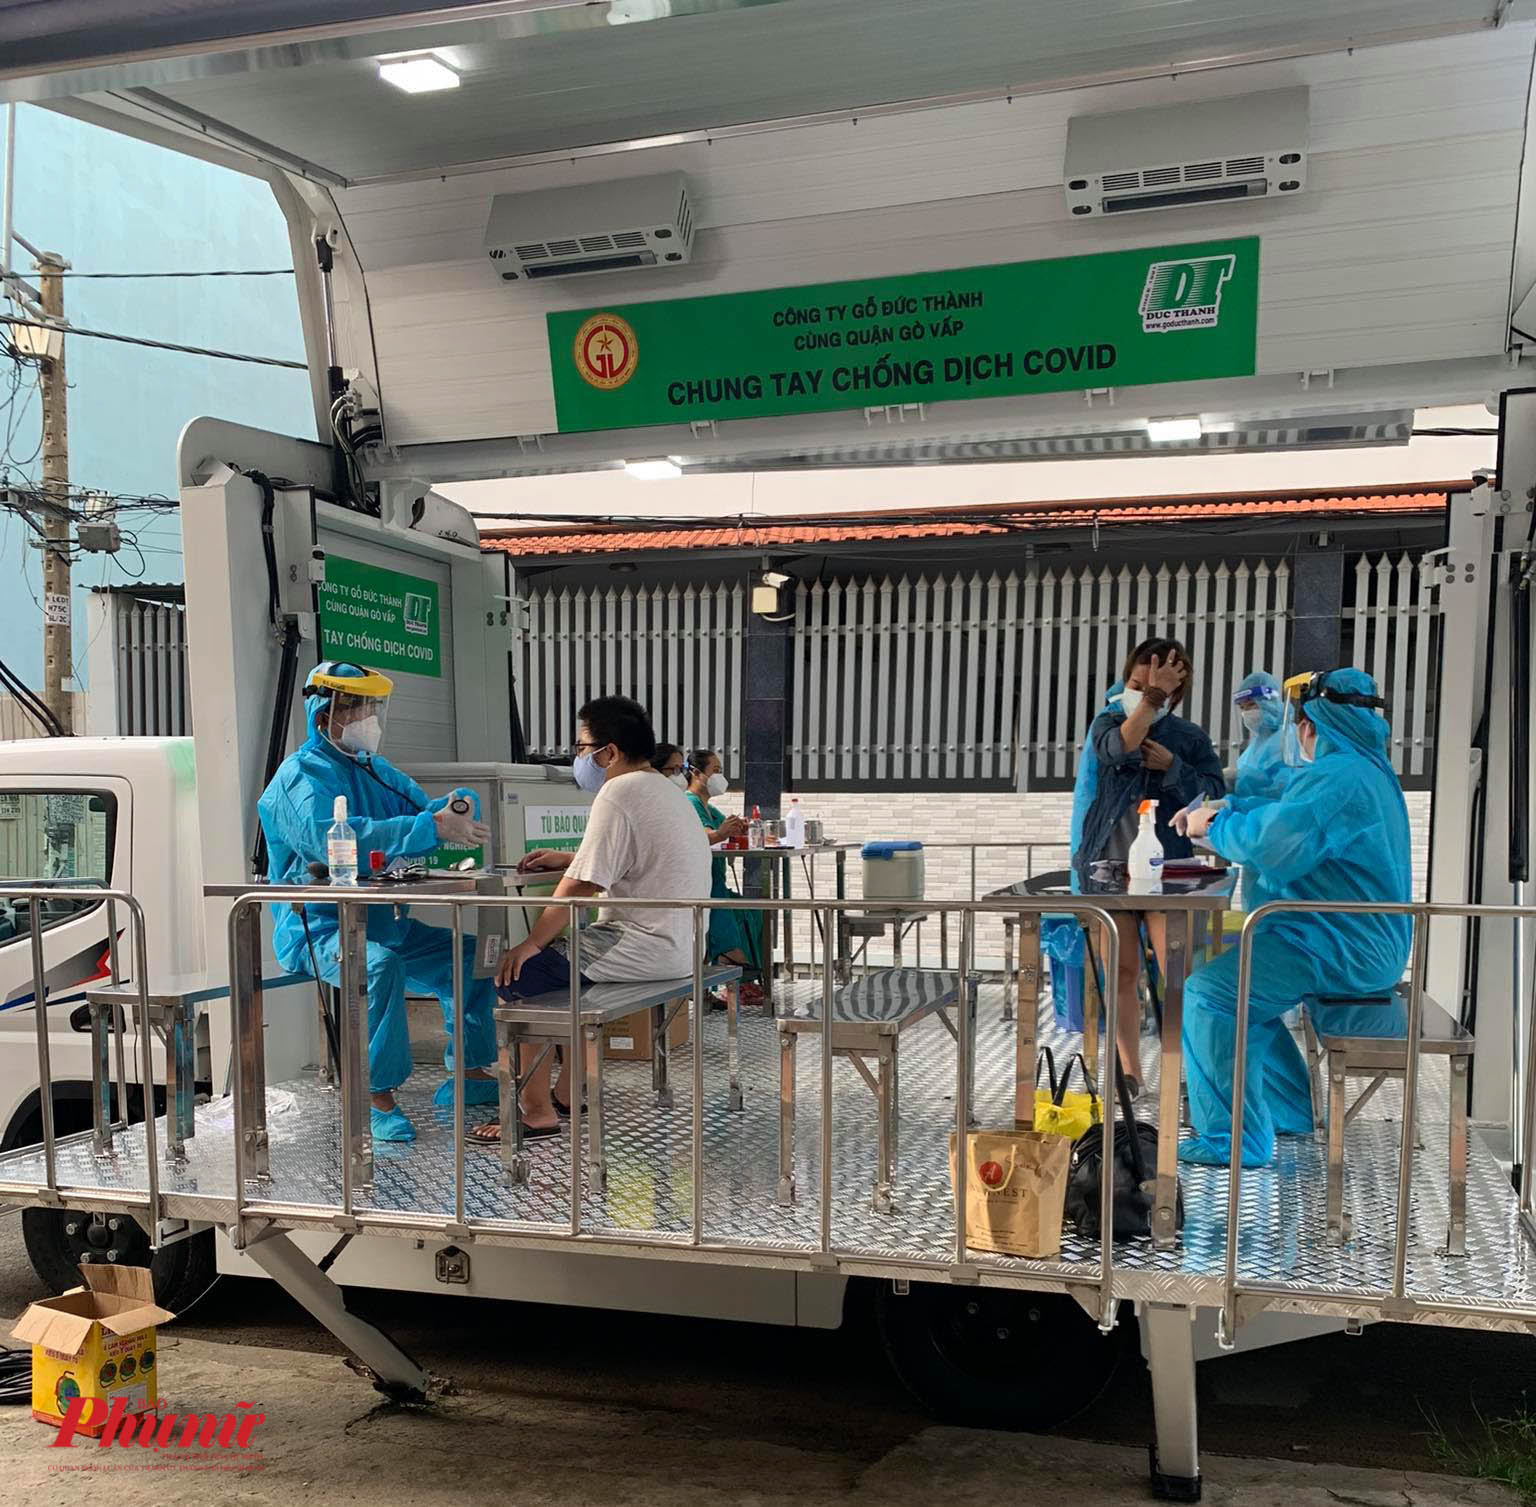 Chiều 12/8, sau khi tiếp nhận xe, Quận Gò Vấp đã tiến hành cho tiêm vắc xin cho người dân trên xe này